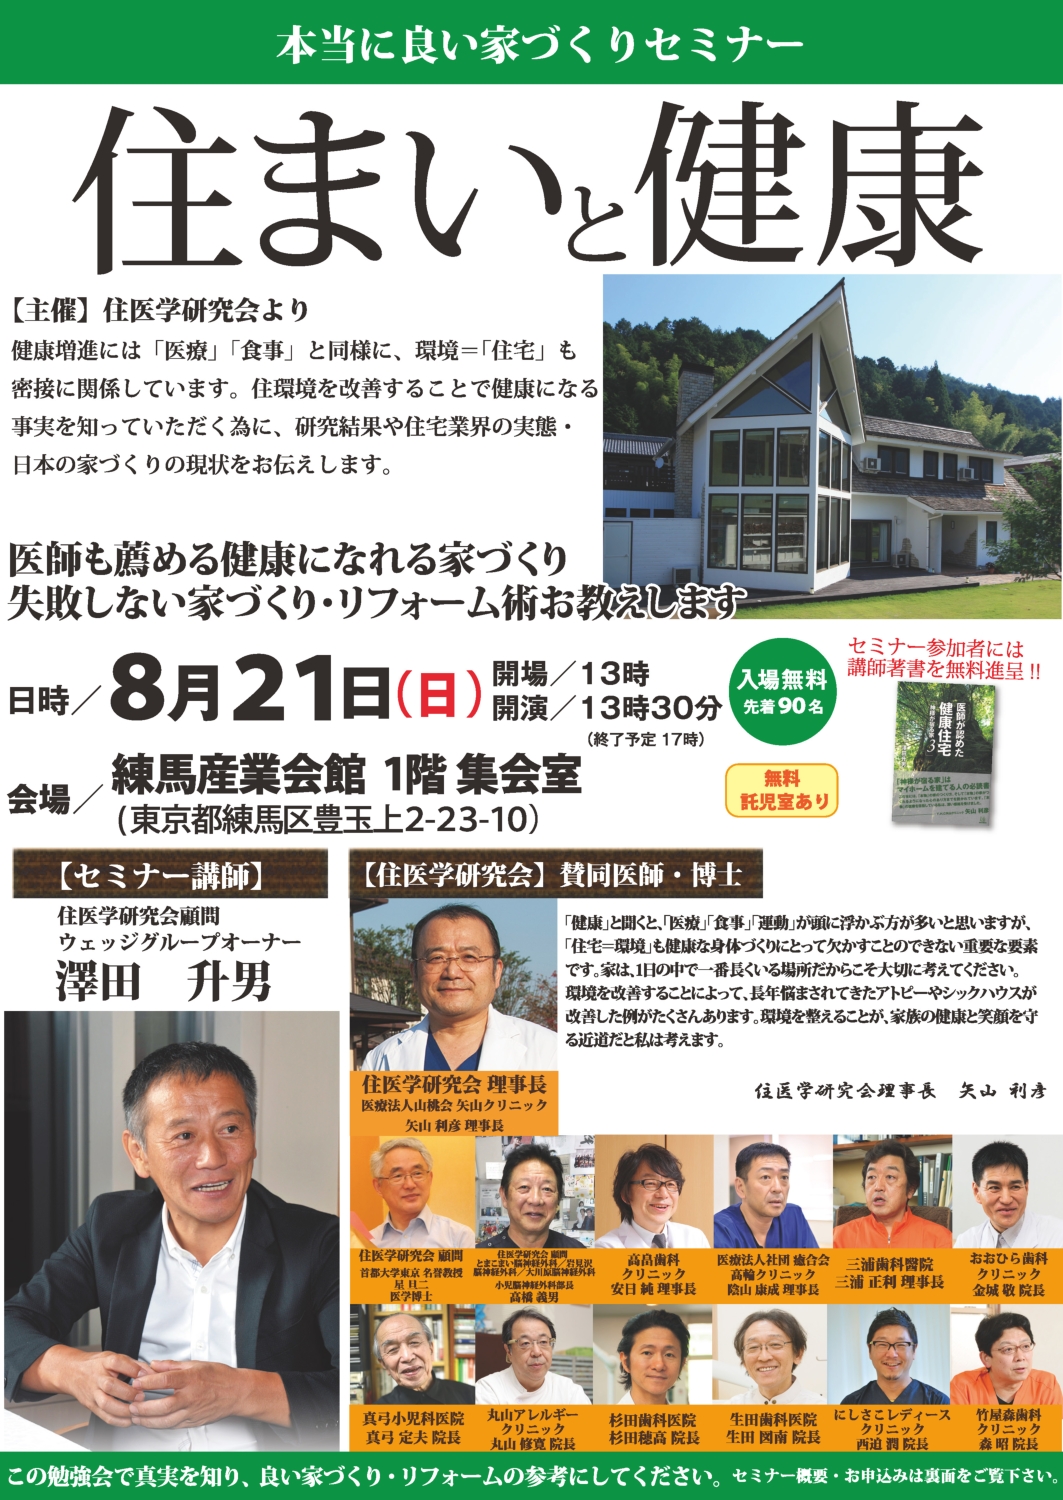 東京で家を建てる方必見の無料セミナー